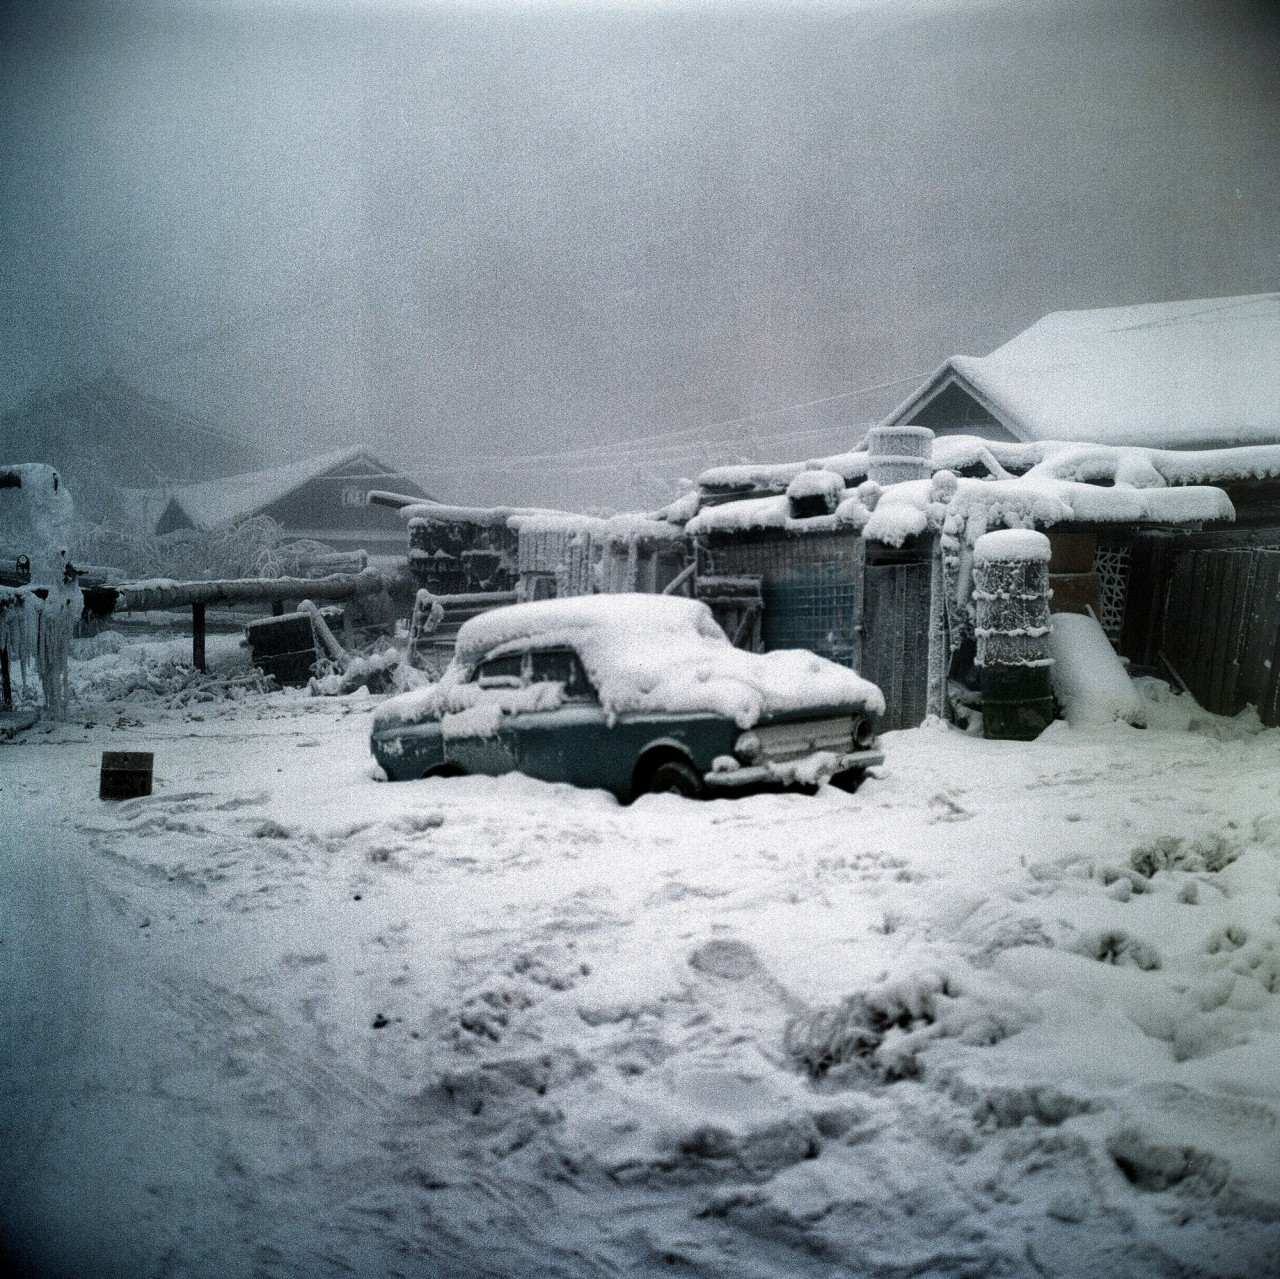 Najzimniejszy dzień w Kanadzie i mrożące krew w żyłach piękno: zamrożona opowieść z zimy 1947 roku w Snag, Yukon 1